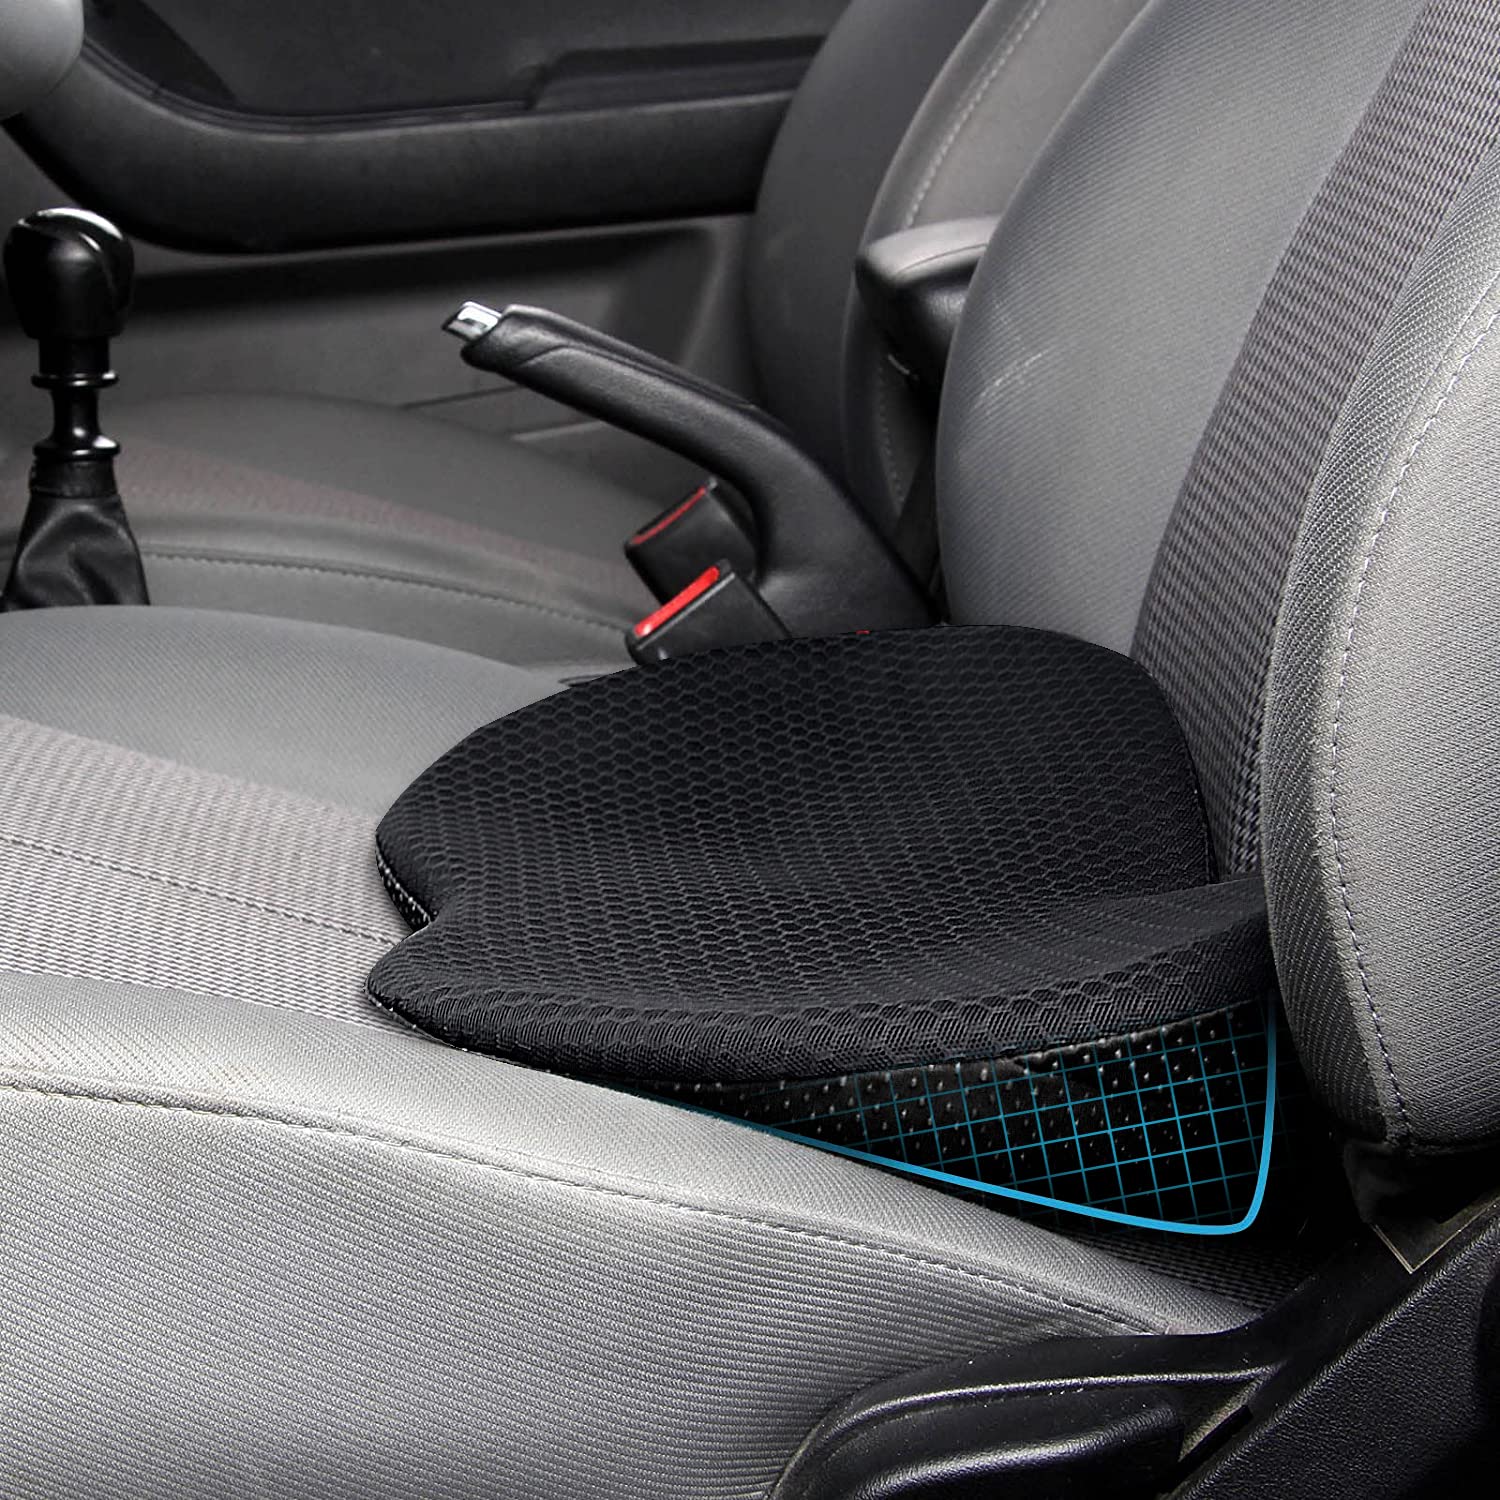 Cojines para coche de gel - Sensación de frescura y confort en los asientos del vehículo